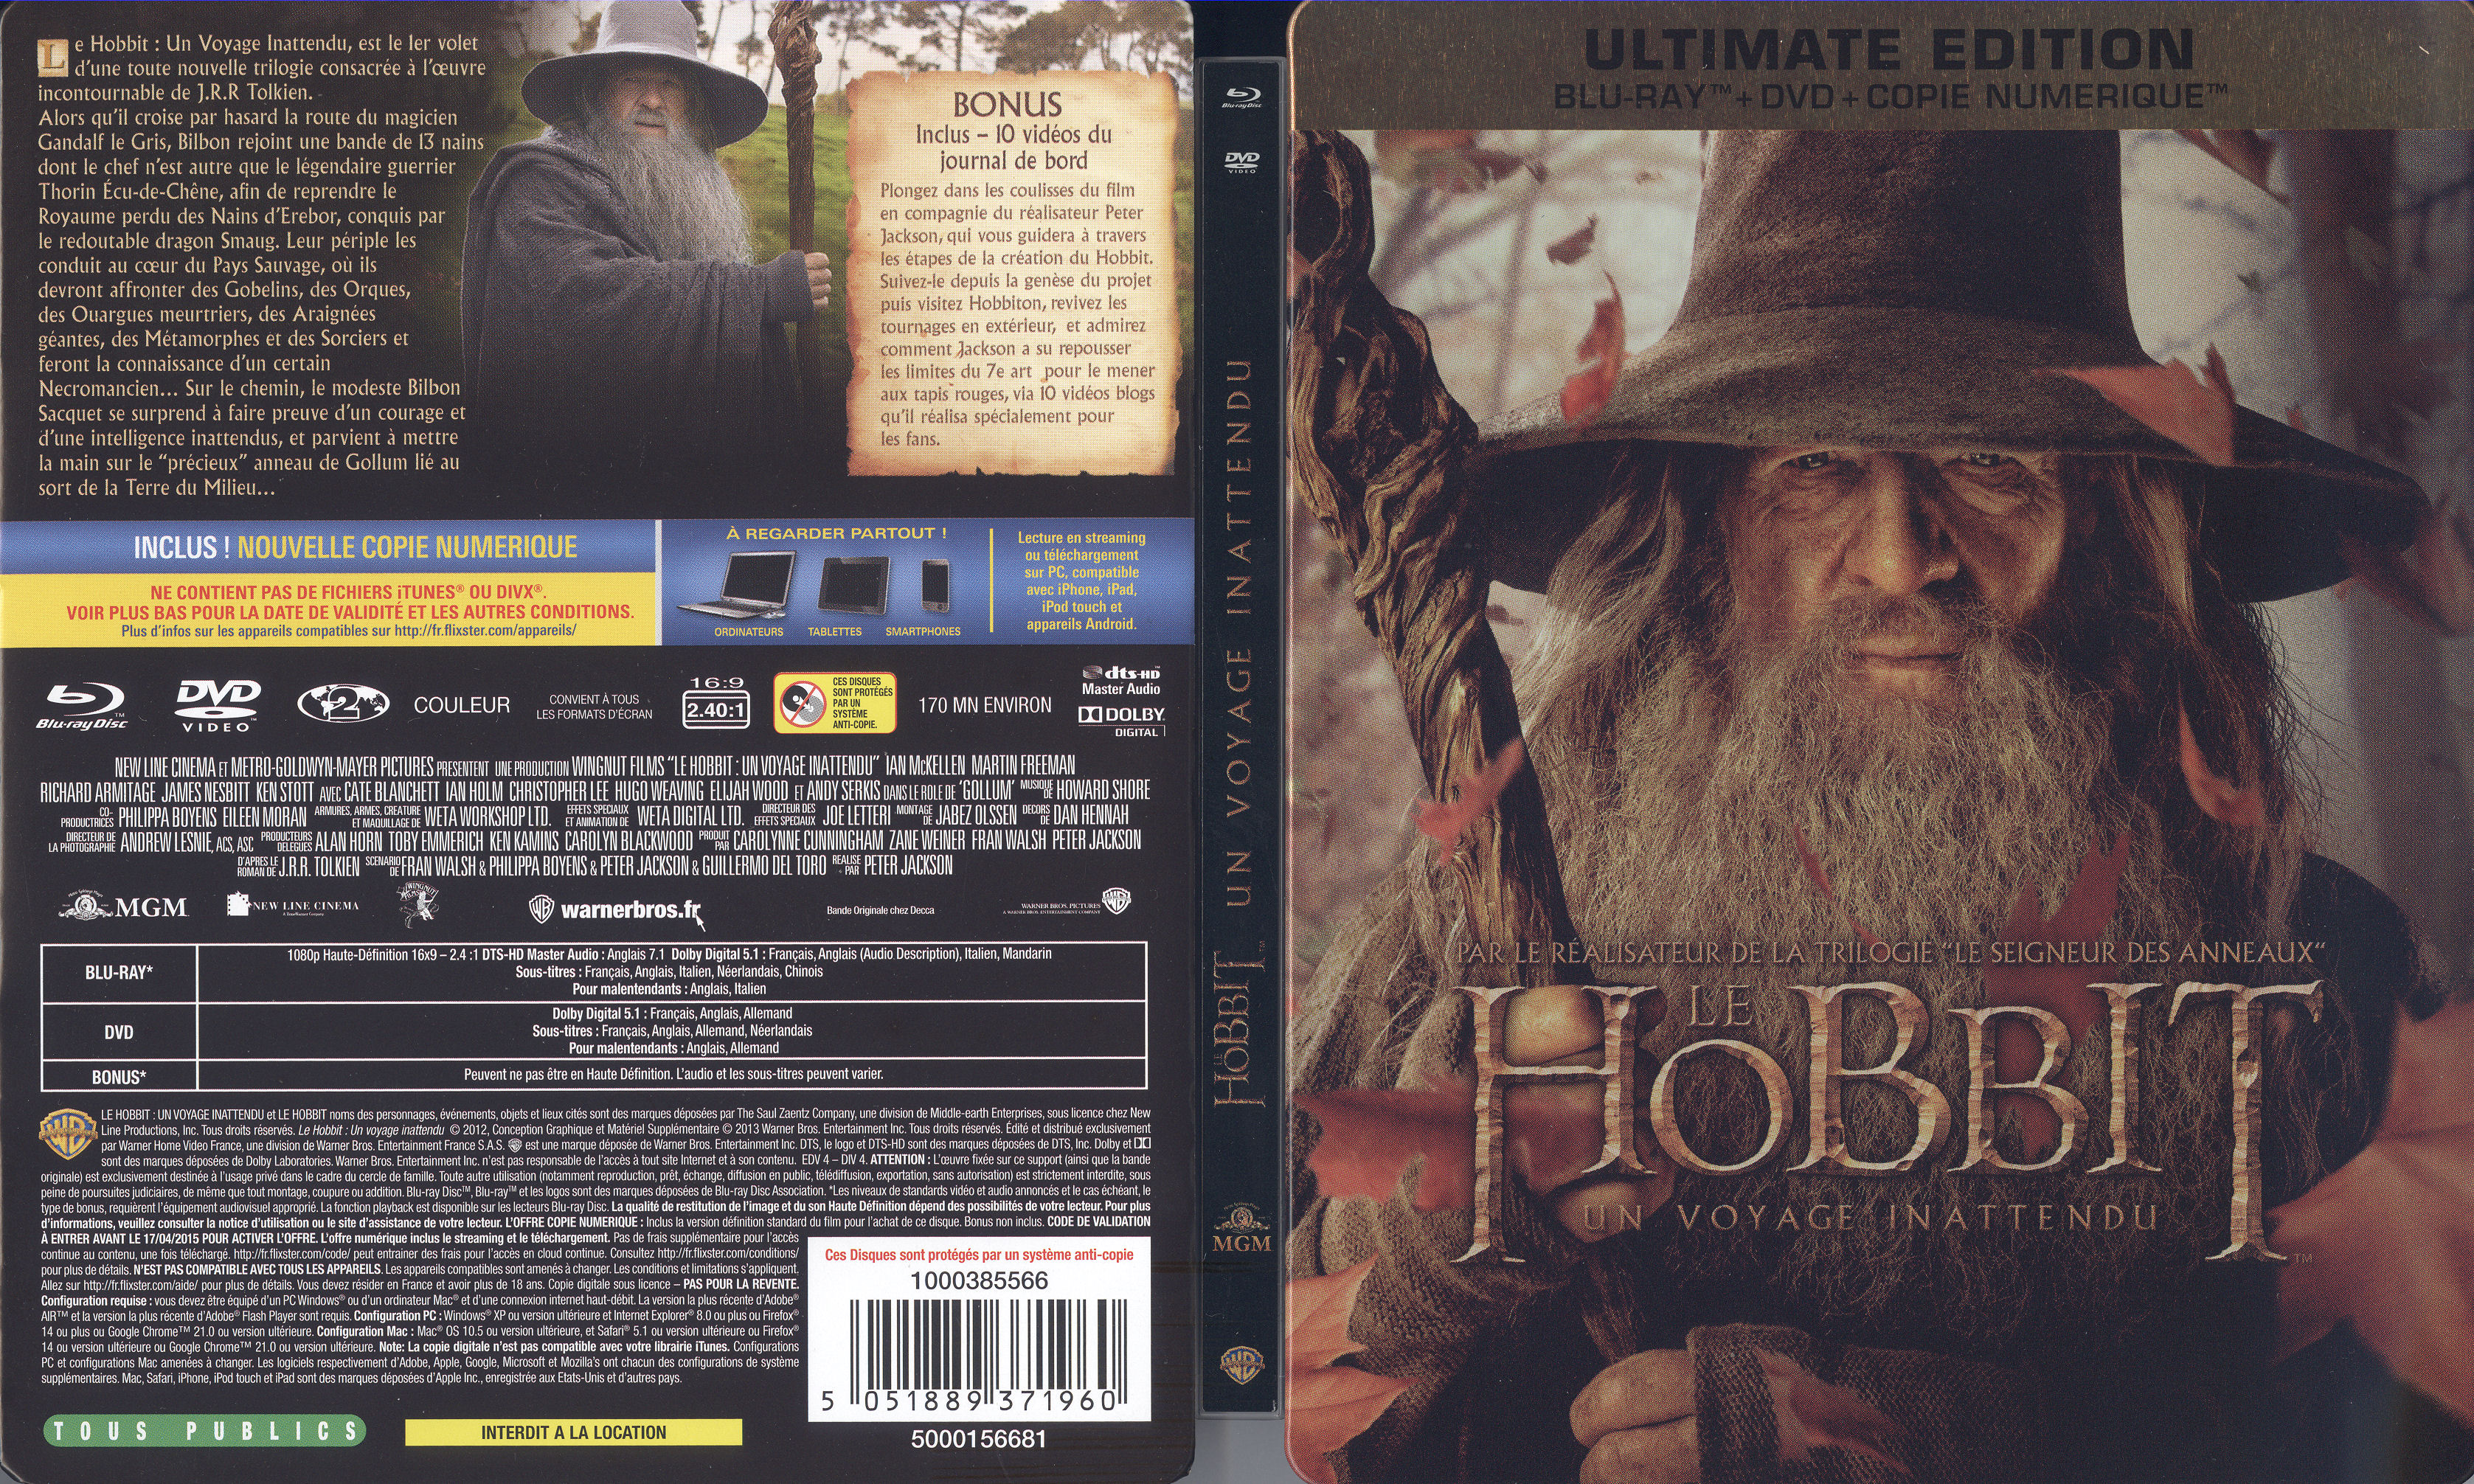 Jaquette DVD Le Hobbit un voyage inattendu (BLU-RAY) v3